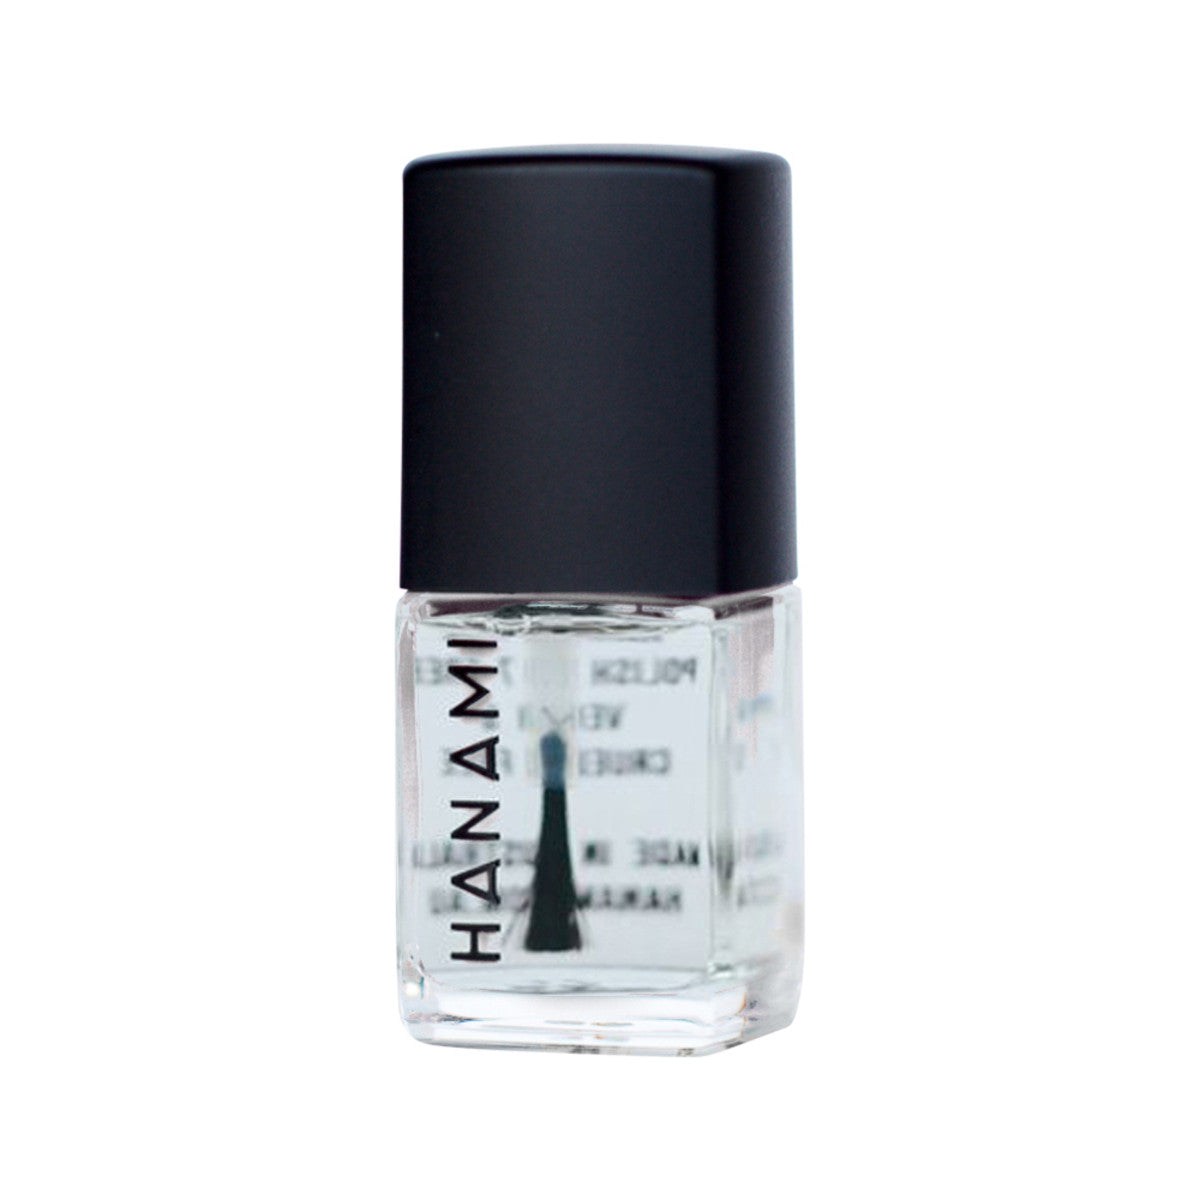 Hanami - Nail Polish Nail Primer 15ml